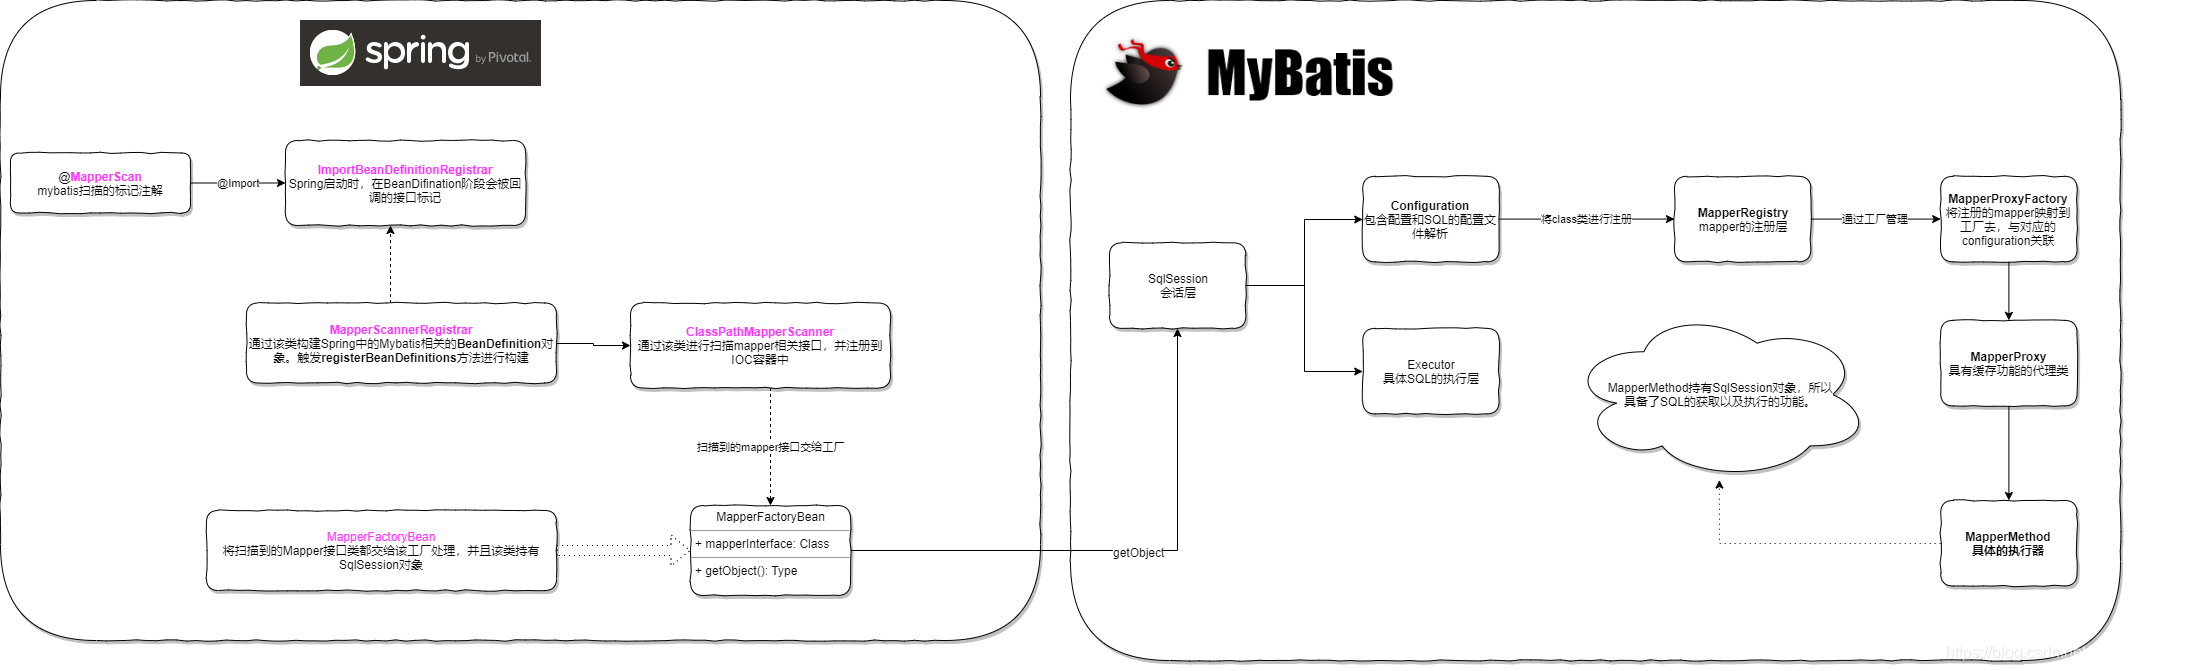 Spring与Myabtis集合的流程图